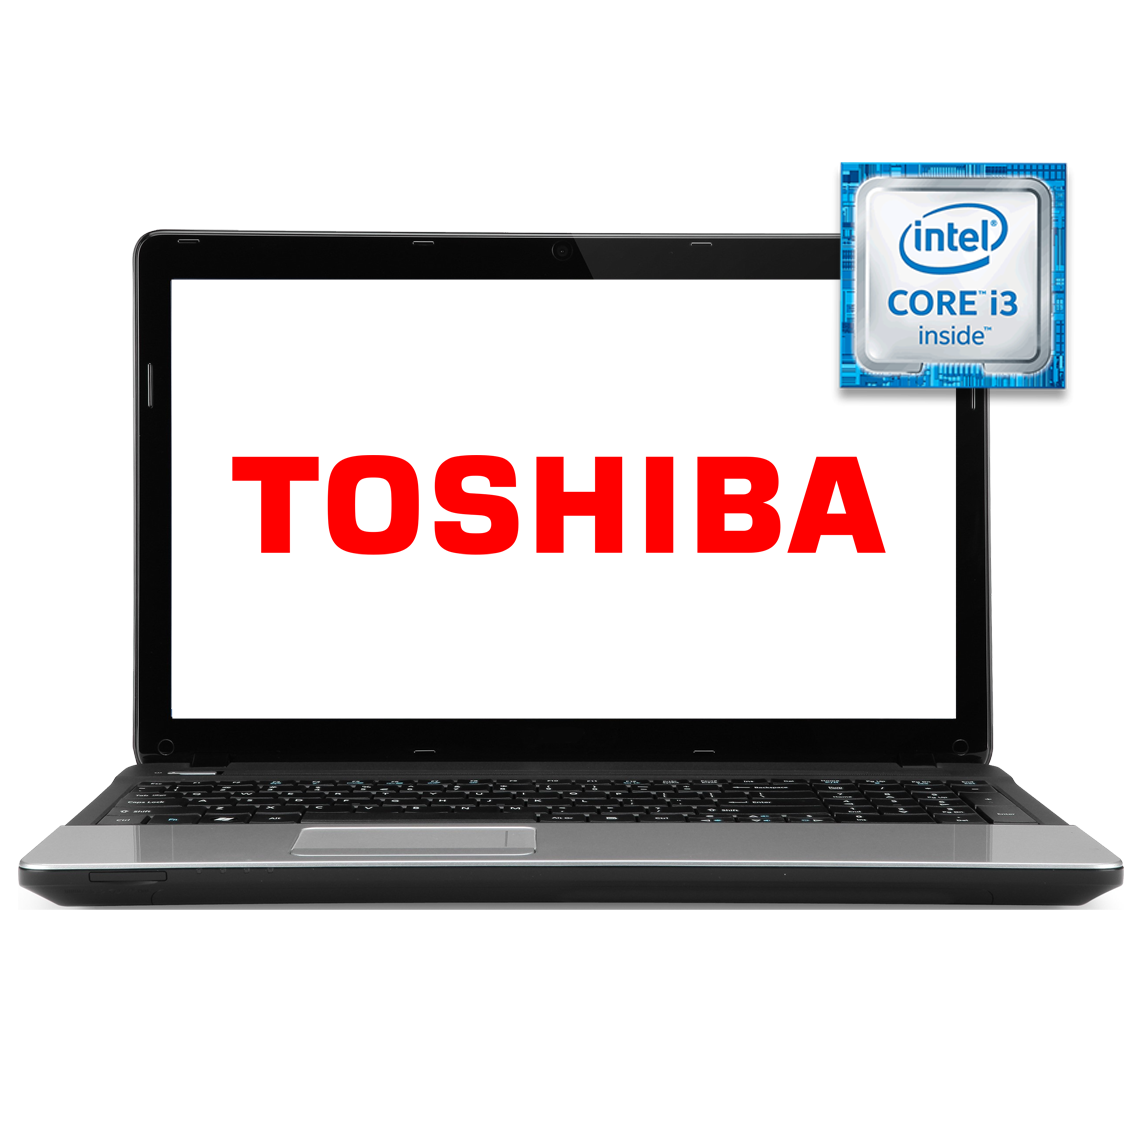 Toshiba - 13 inch Core i3 5th Gen